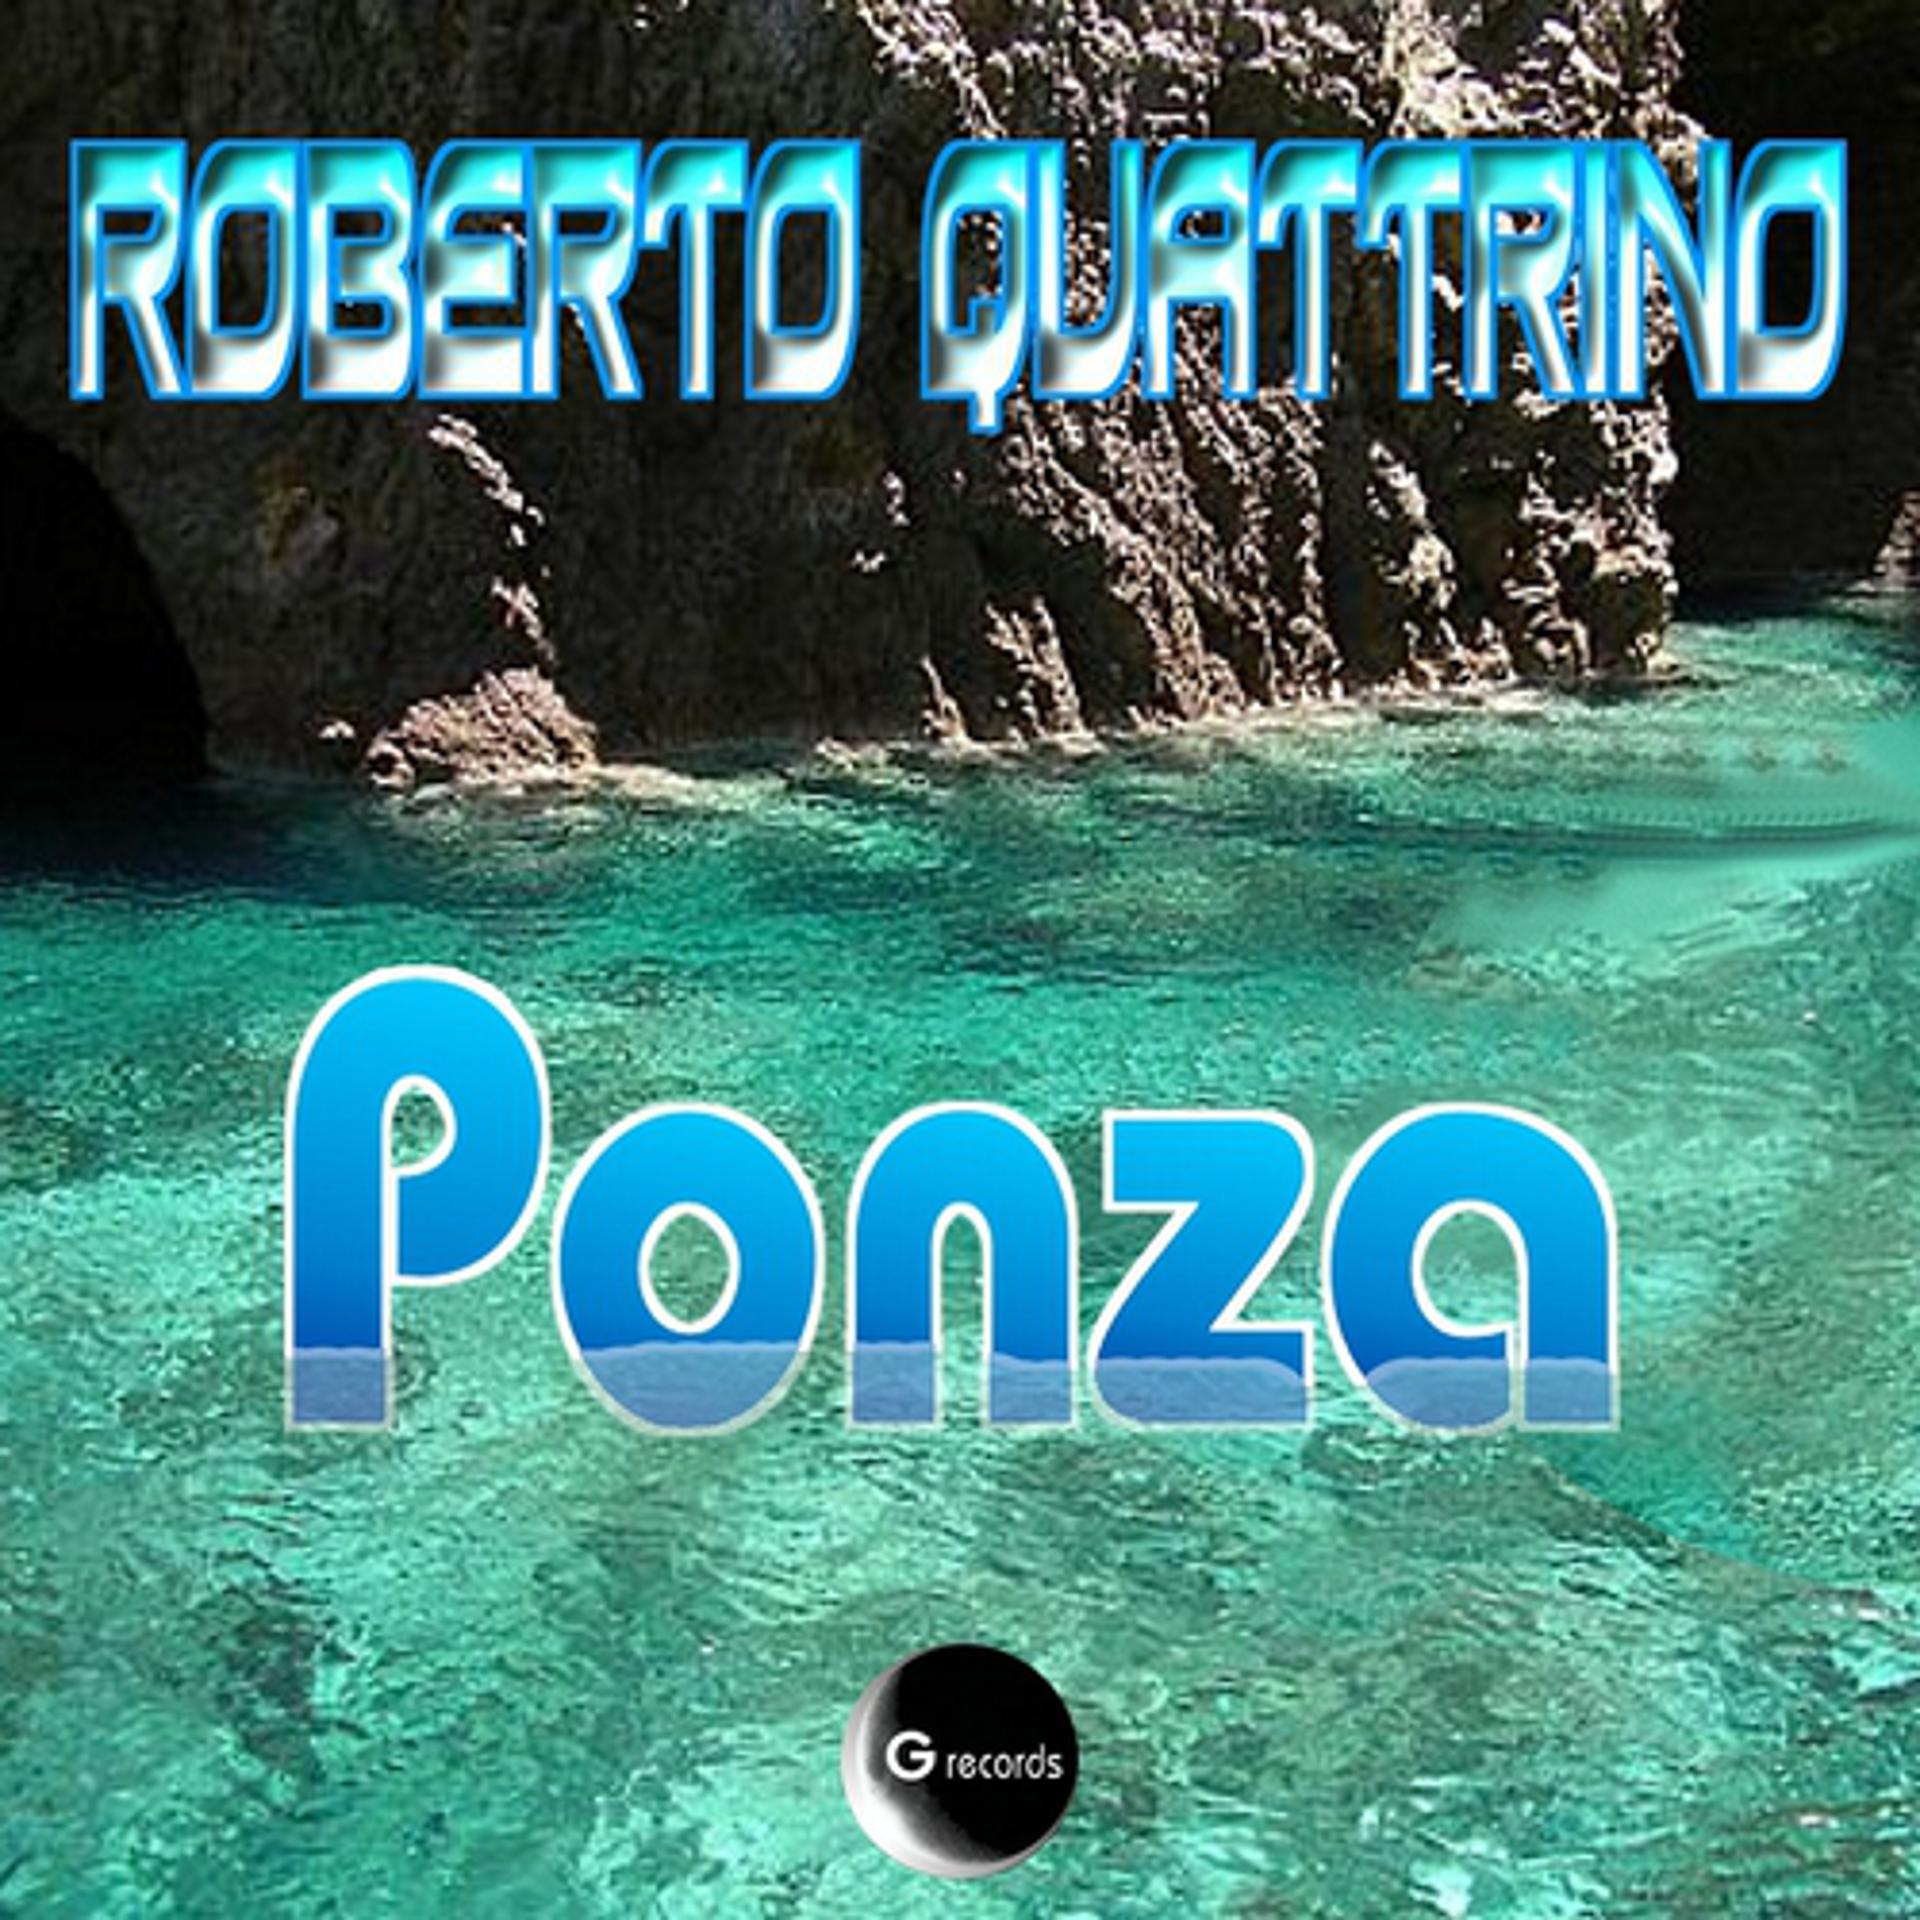 Постер альбома Ponza